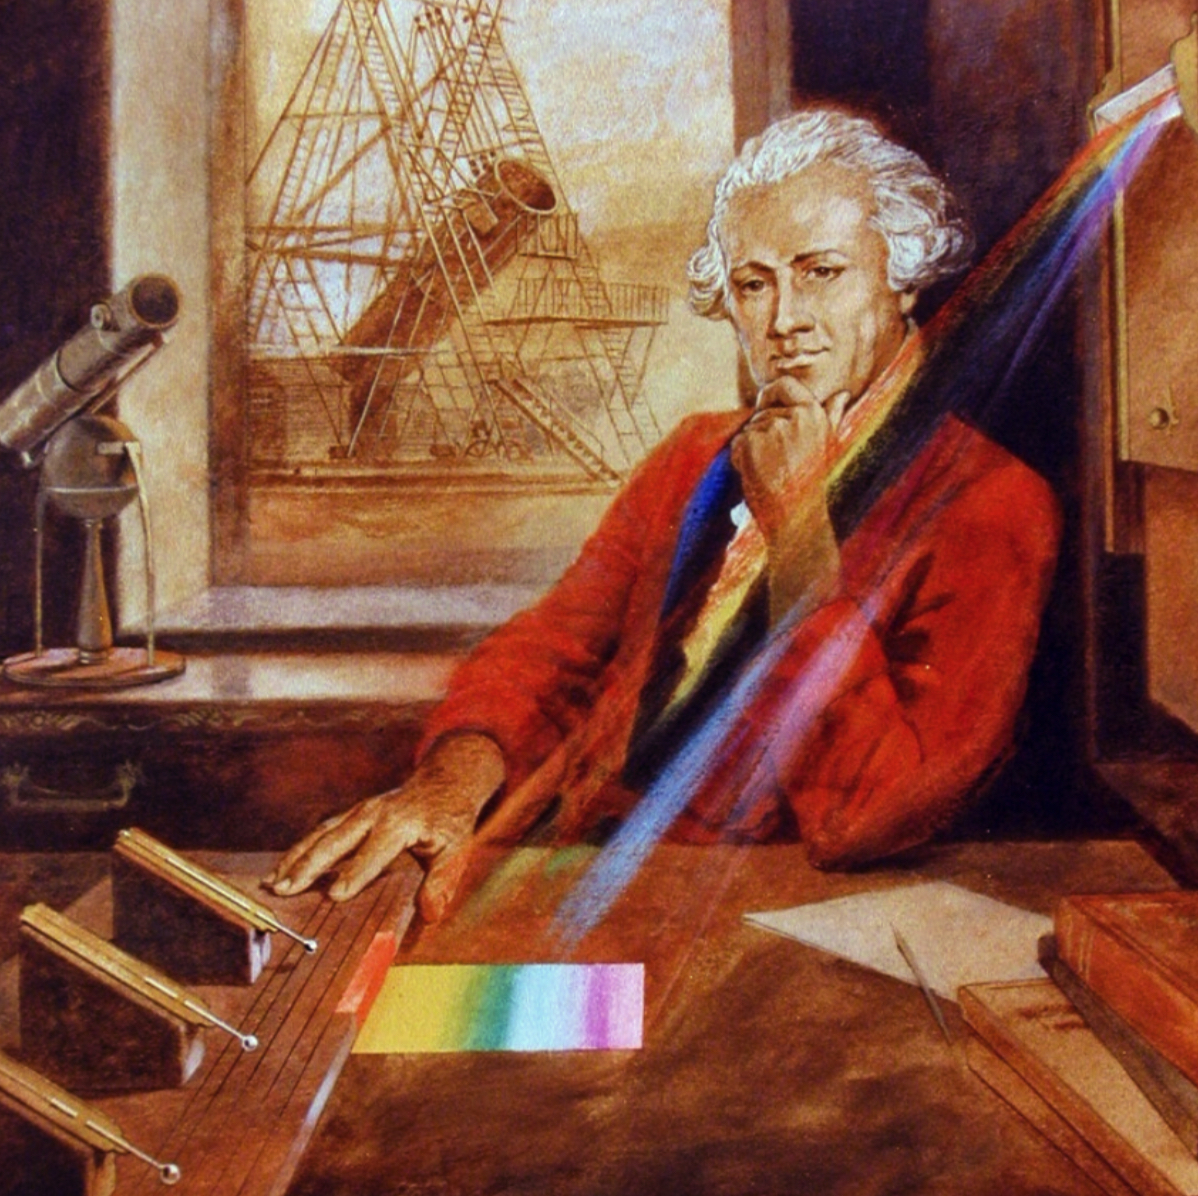 William Herschel descubrió la radiación infrarroja utilizando un prisma y un termómetro